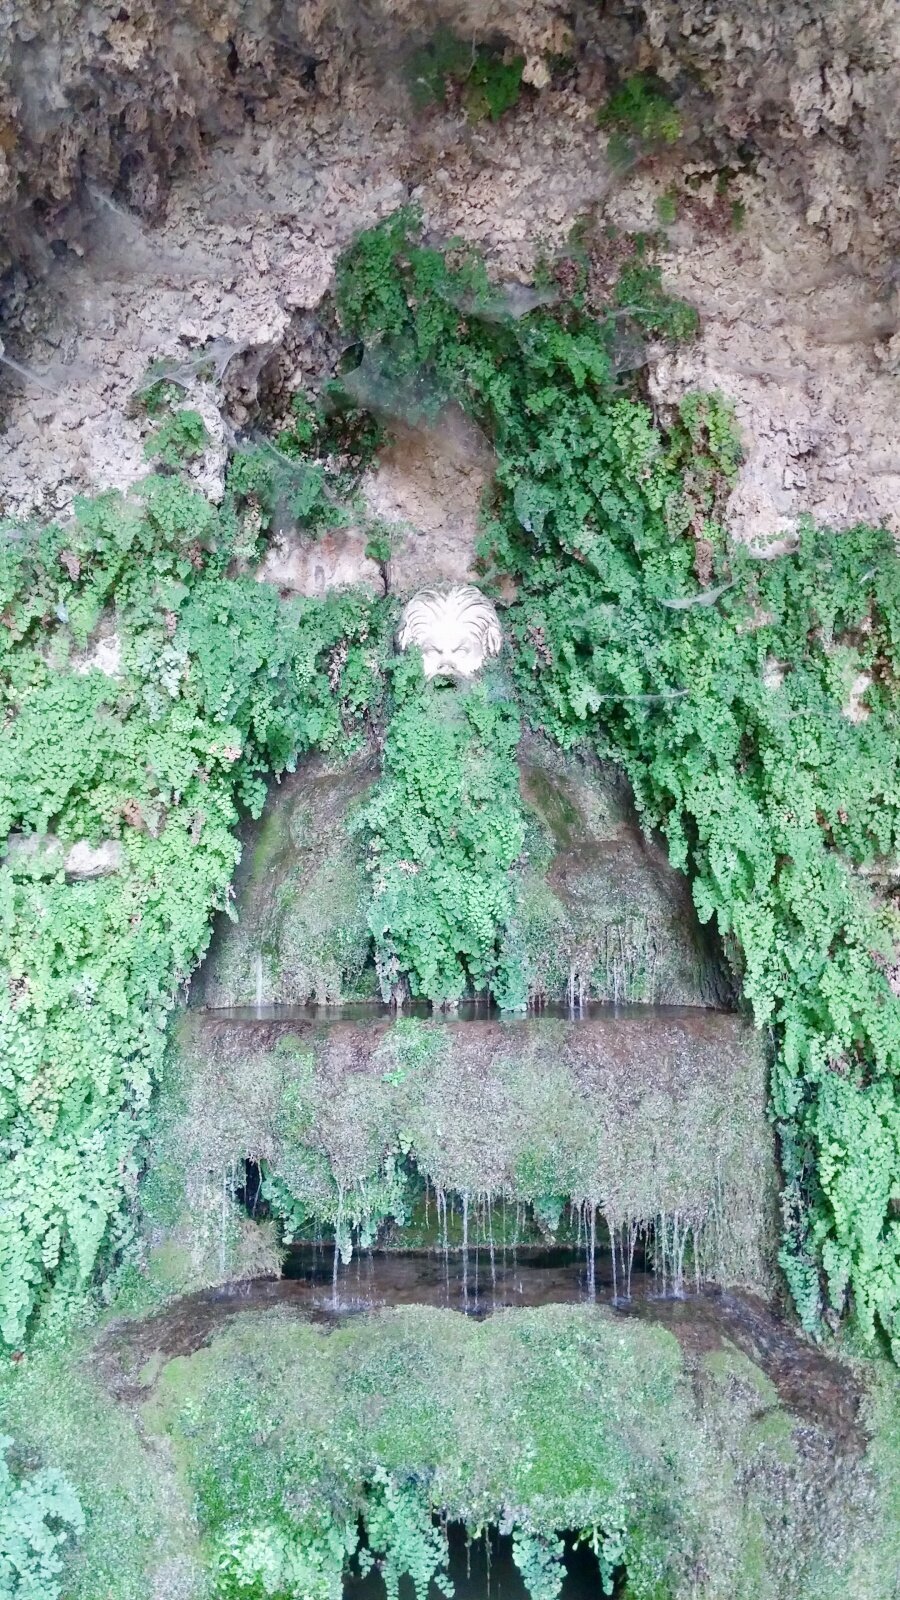 Plants turning to stone. Pomona Grotto